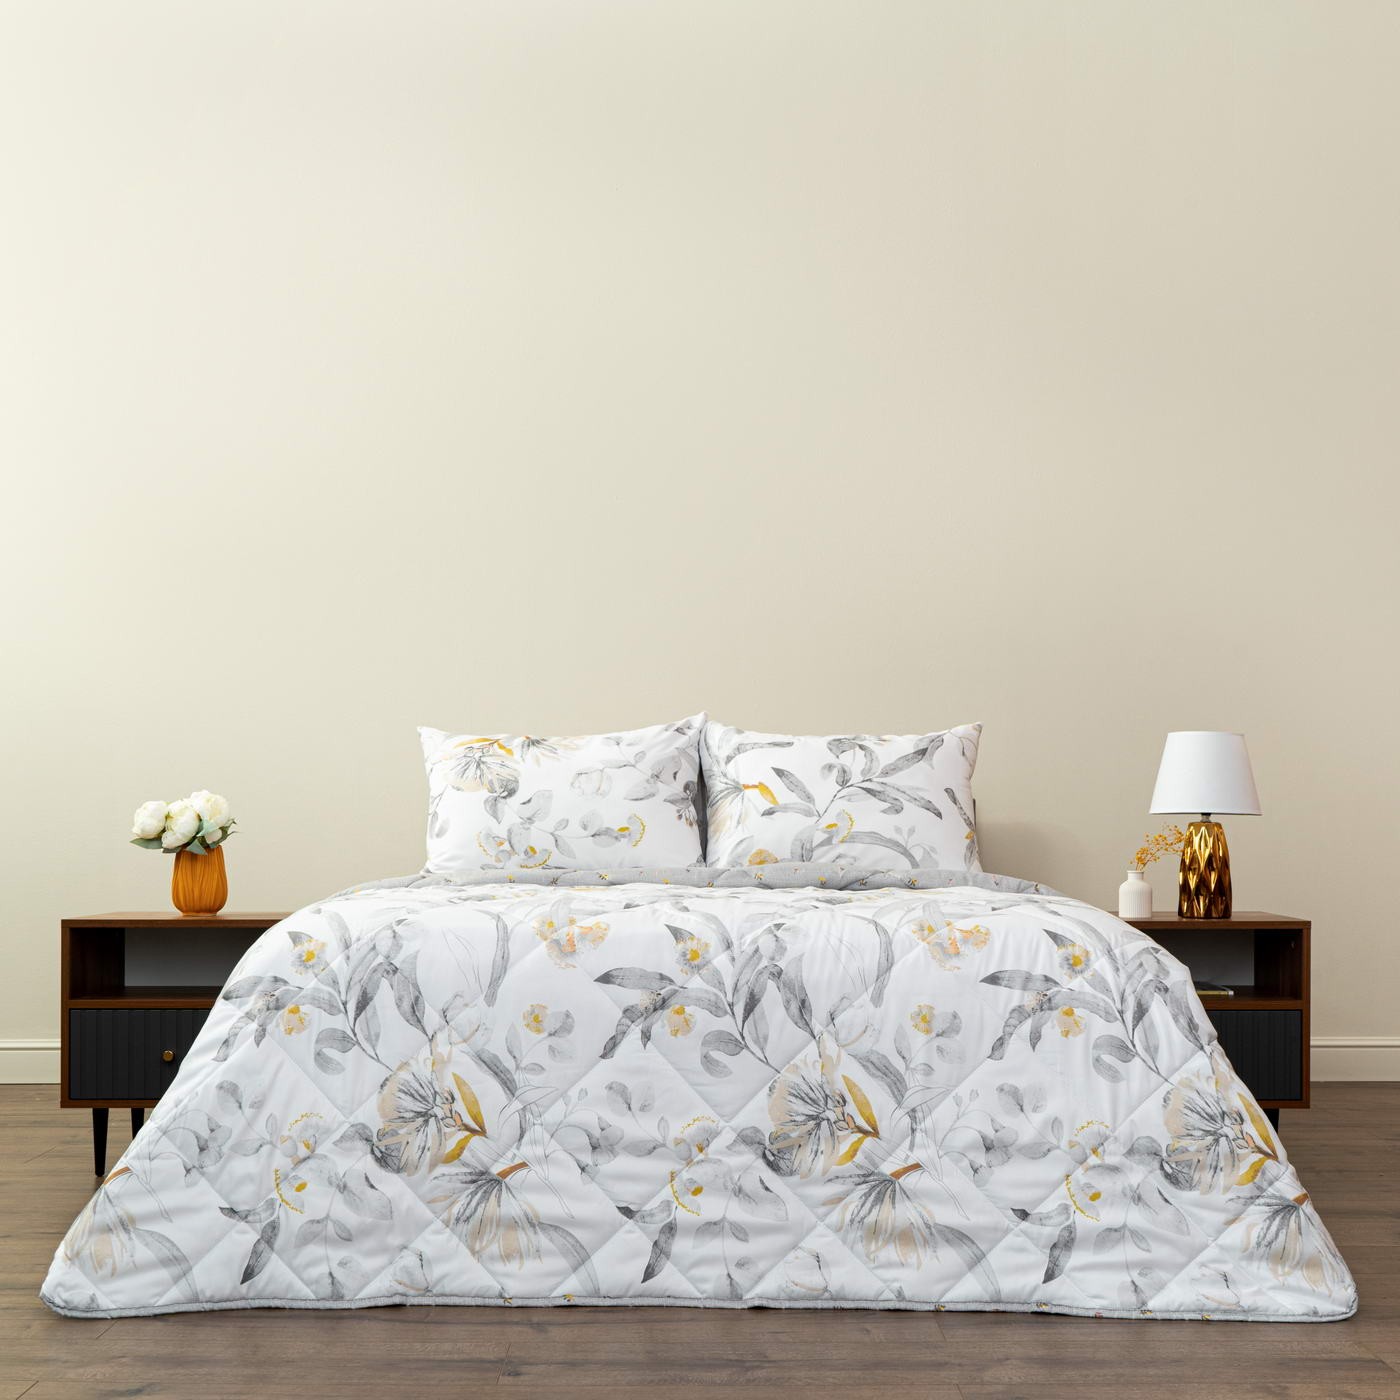 Постельное белье с одеялом-покрывалом Массимо цвет: белый, серый, желтый (1.5 сп), размер 50х70 (1 шт)